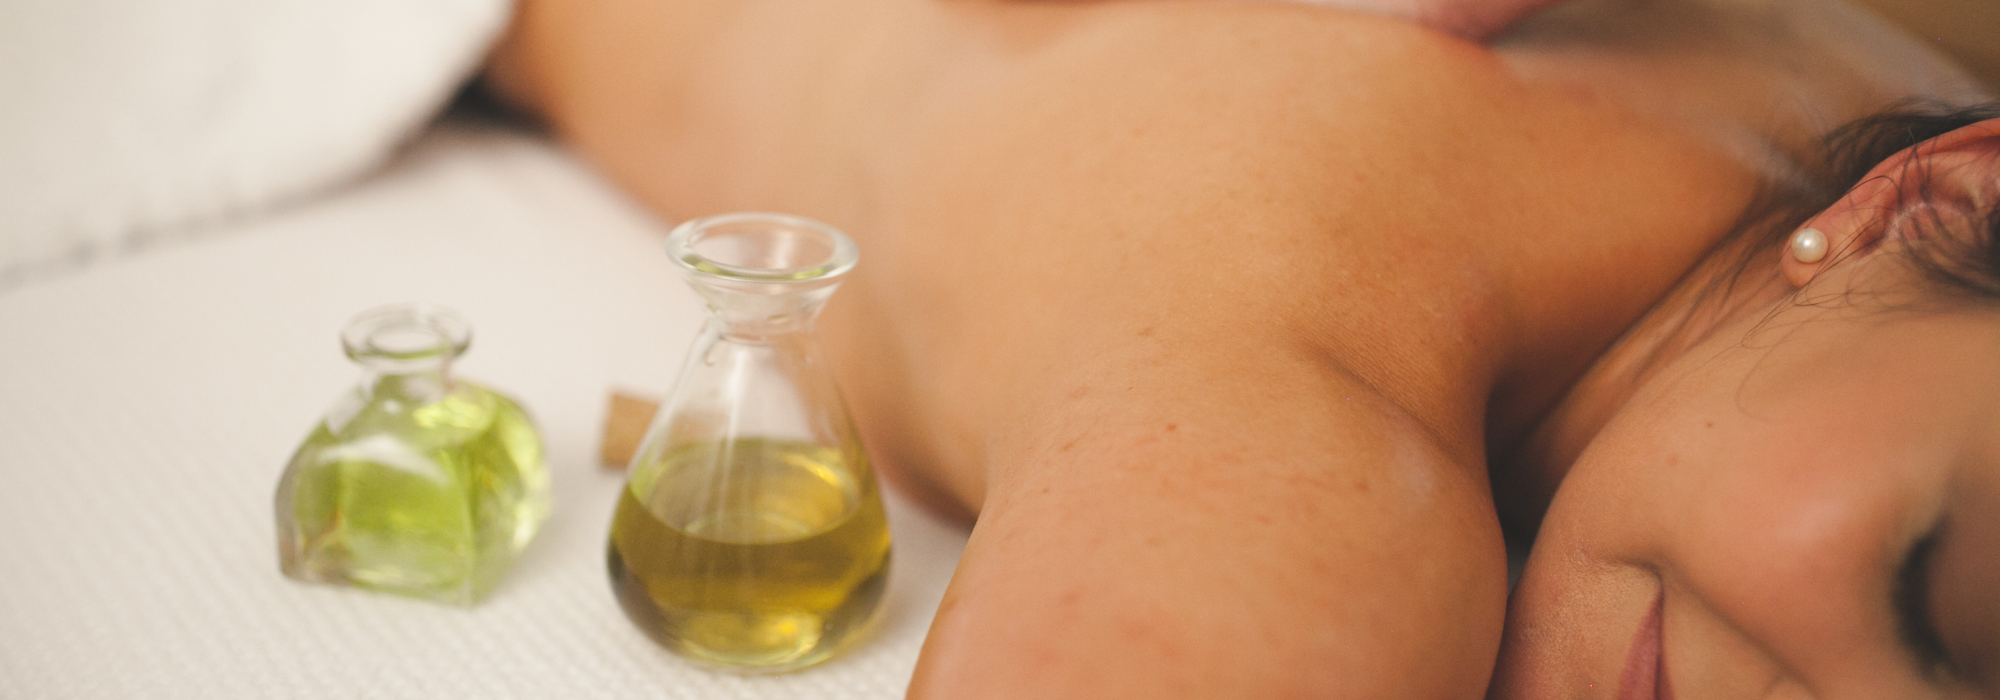 óleos essenciais e massagens: tudo que você precisa saber sobre esse mistura poderosa.